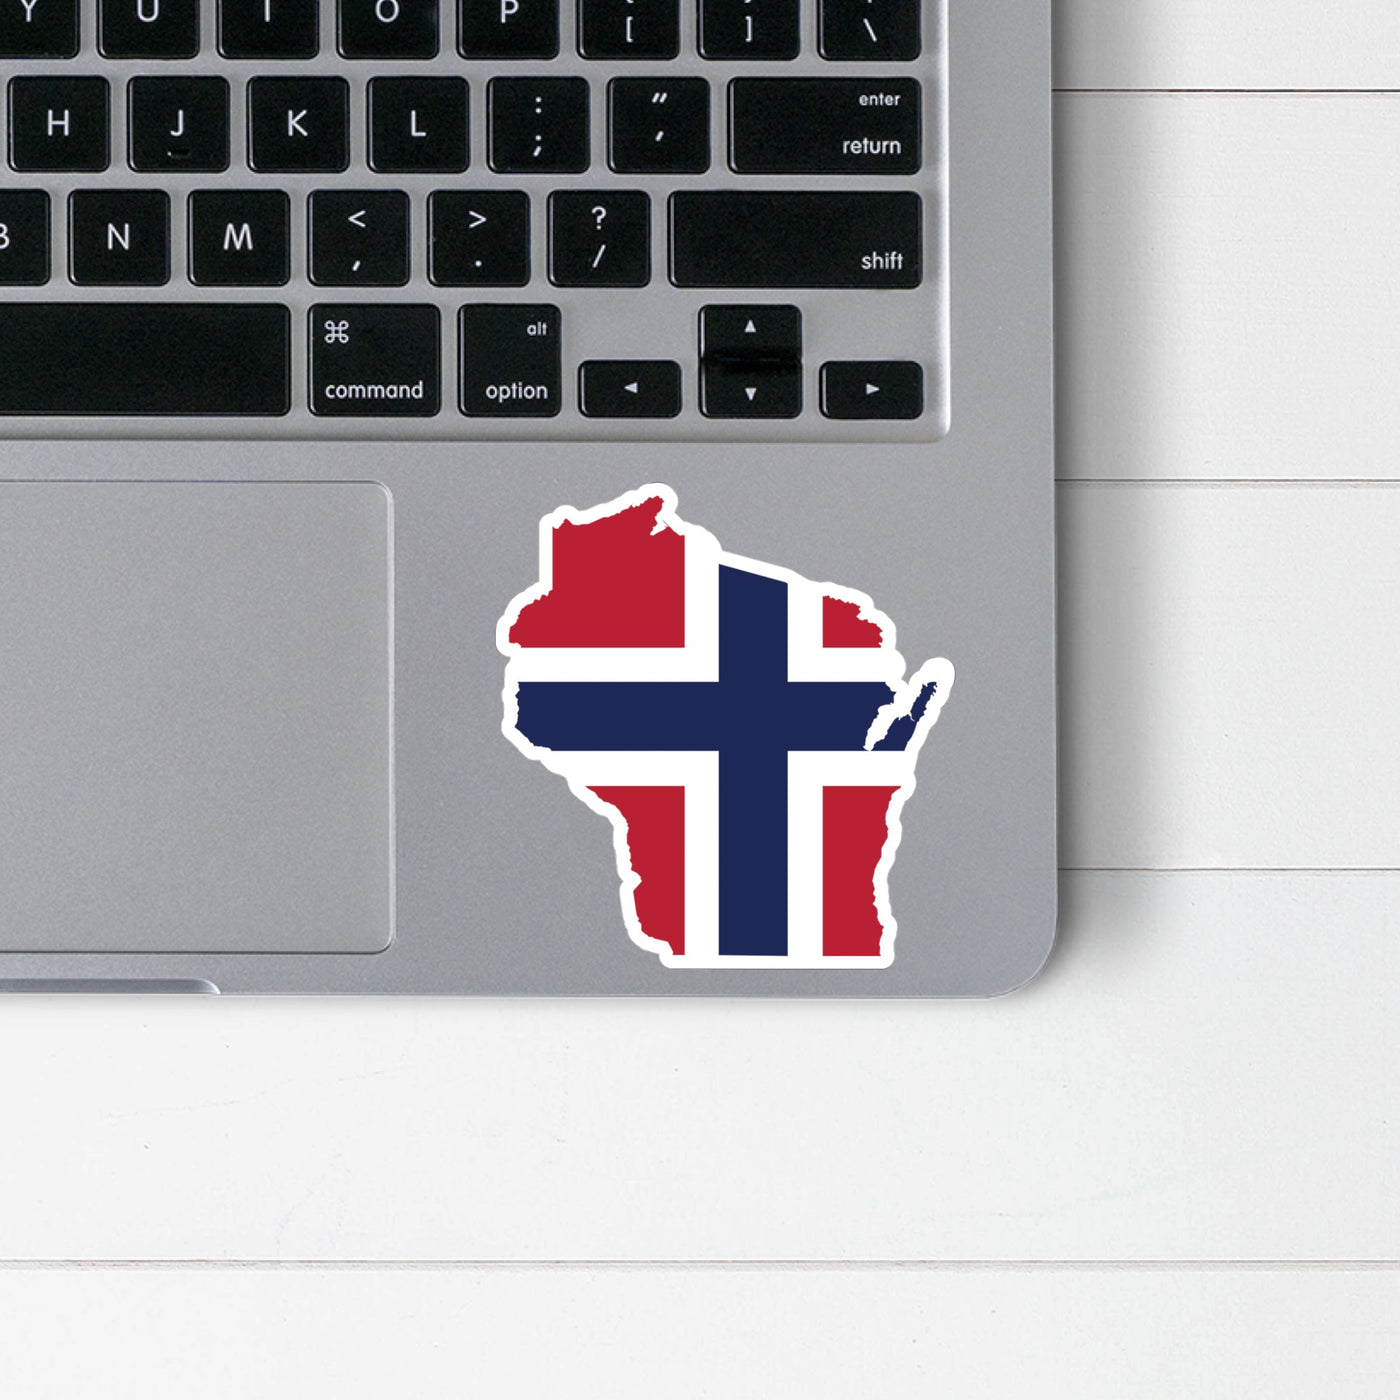 Wisconsin Norwegian Flag Sticker